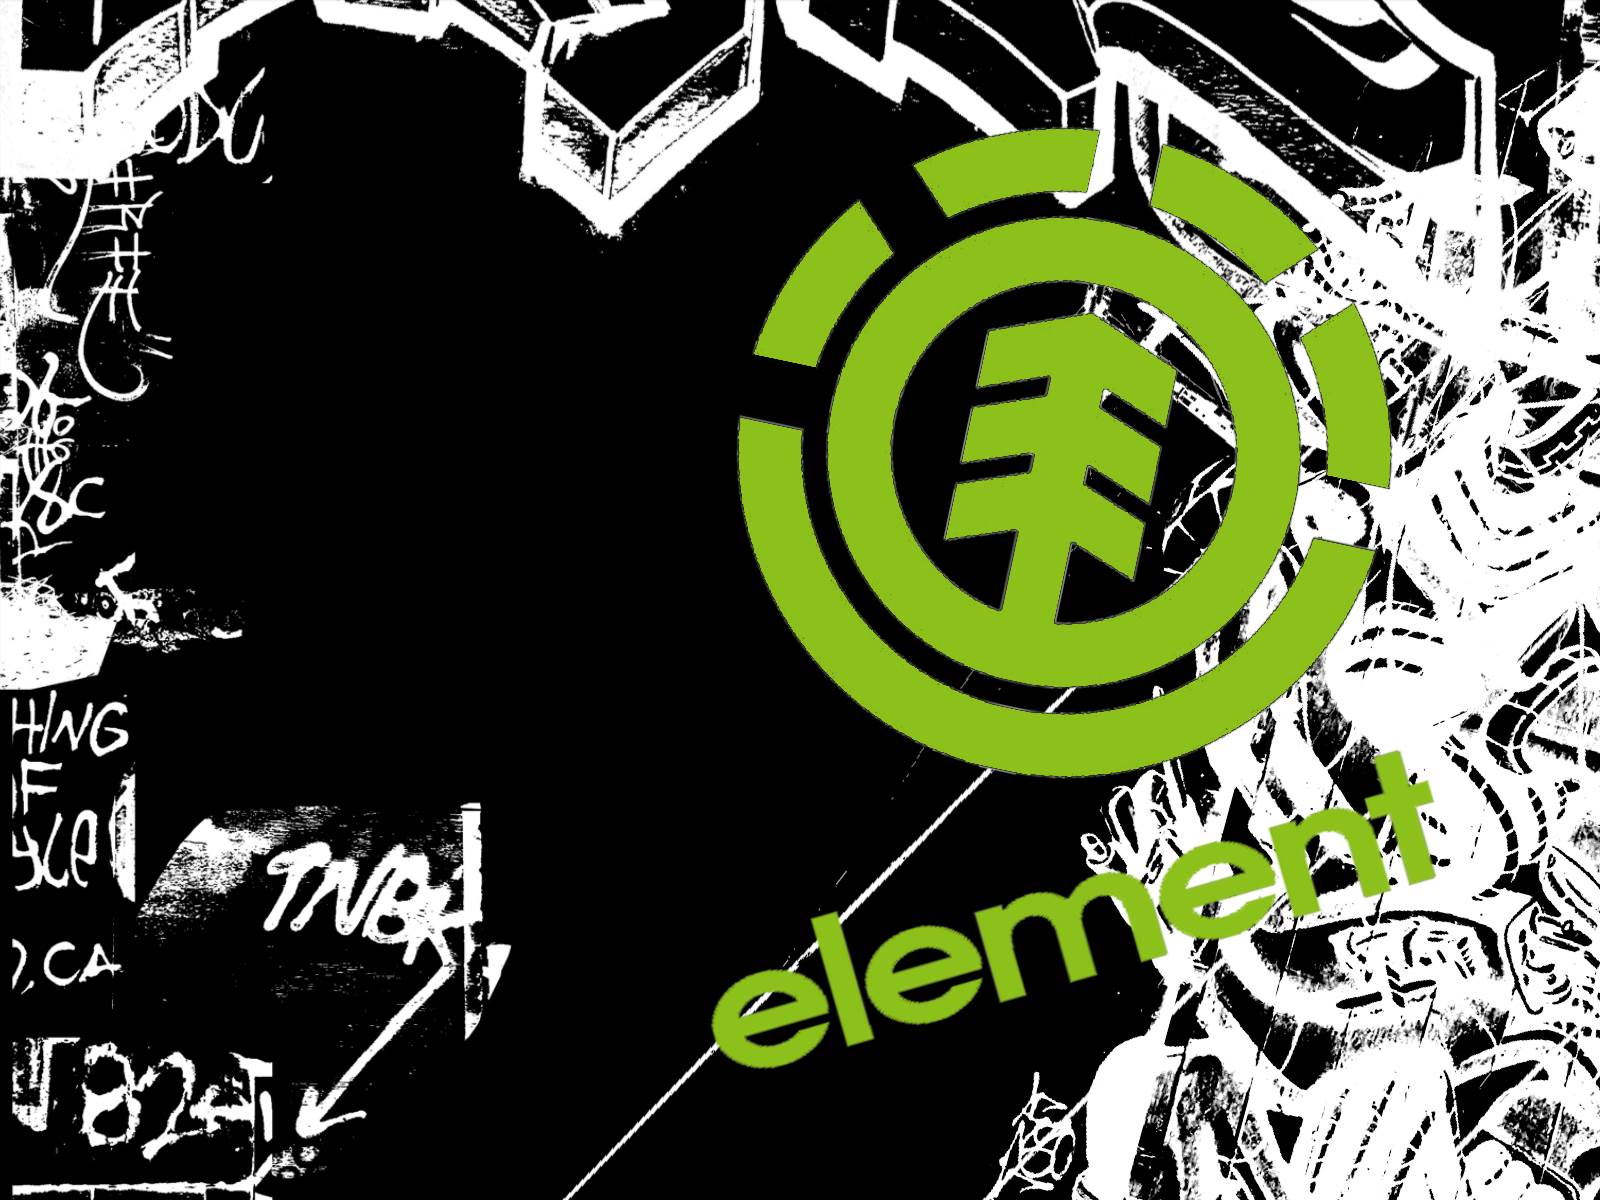 element skate logo wallpaper